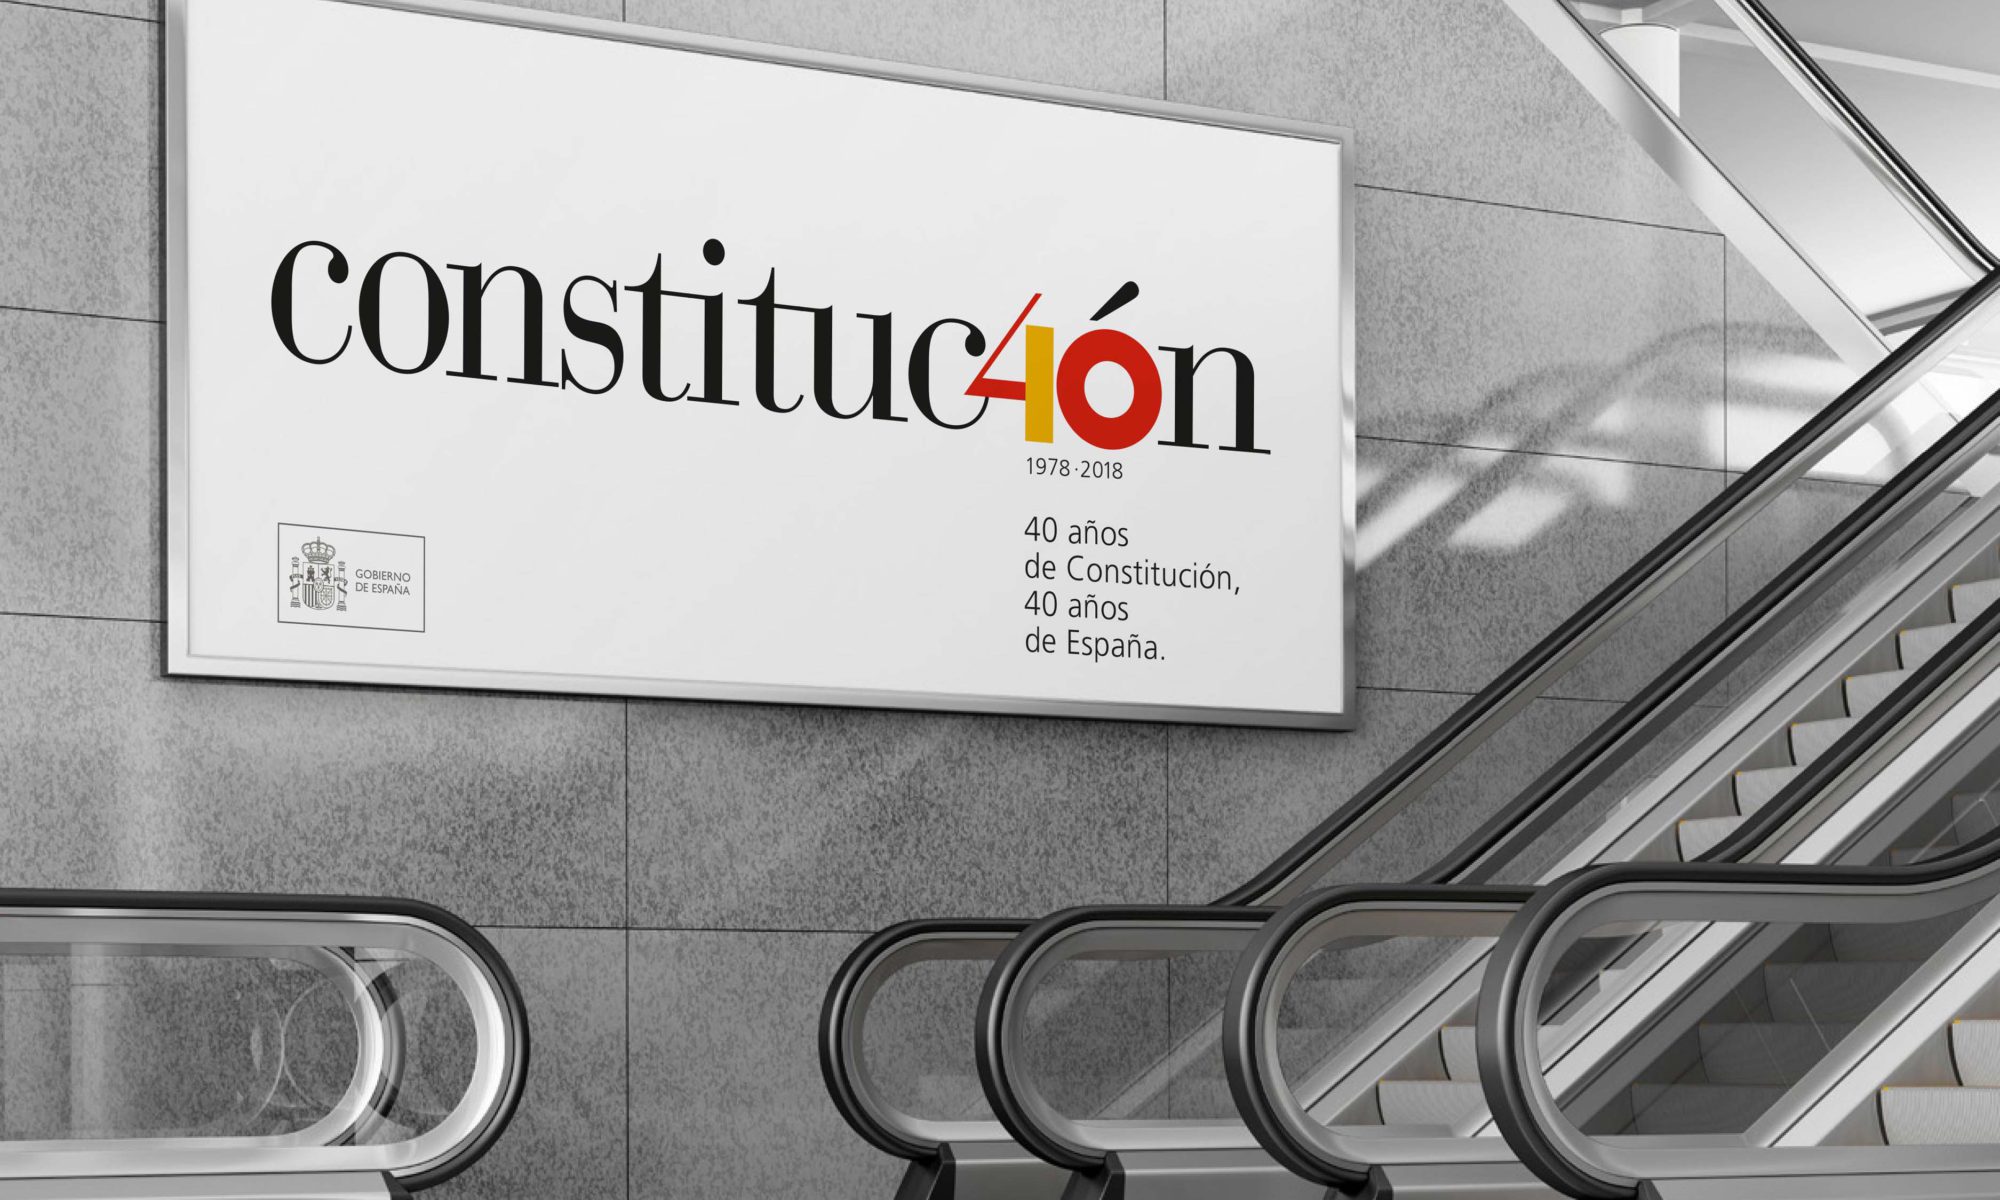 ganador del concurso puesto en marcha por las Cortes Generales para el diseño del logotipo que se utilizará en la conmemoración del 40 aniversario de la aprobación de la Constitución española de 1978.